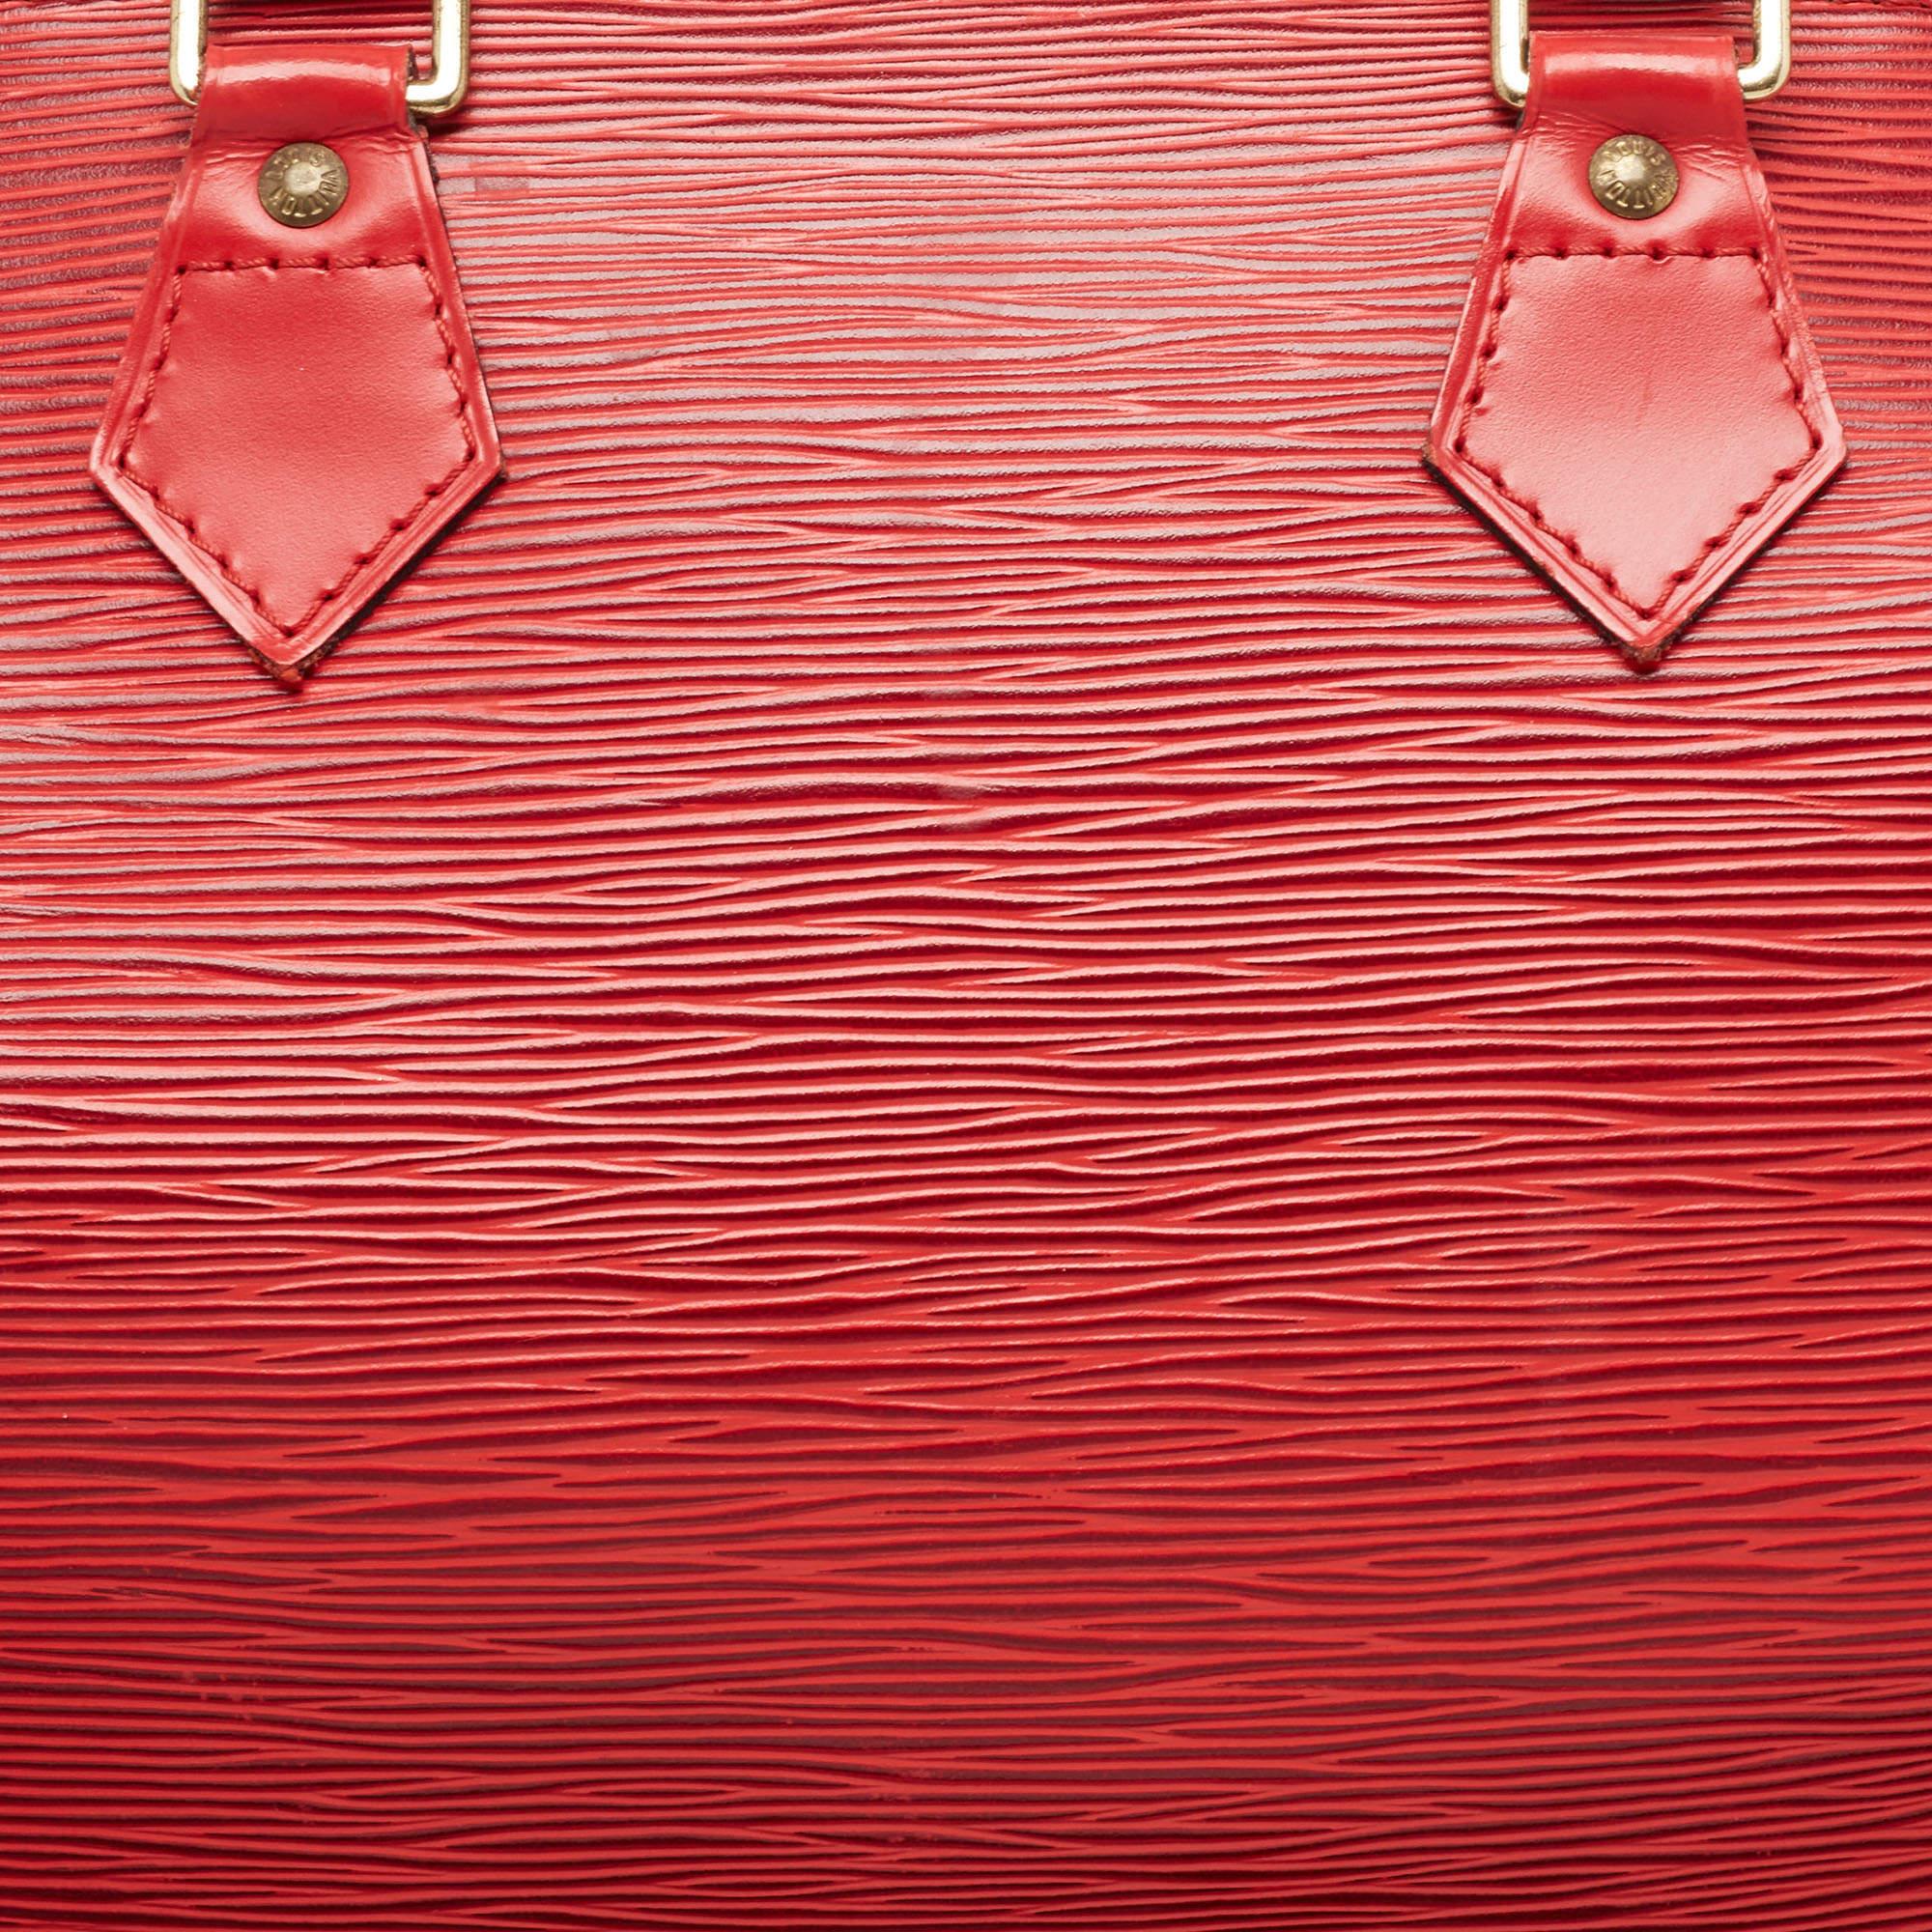 Louis Vuitton Red Epi Leather Speedy 30 Bag 1